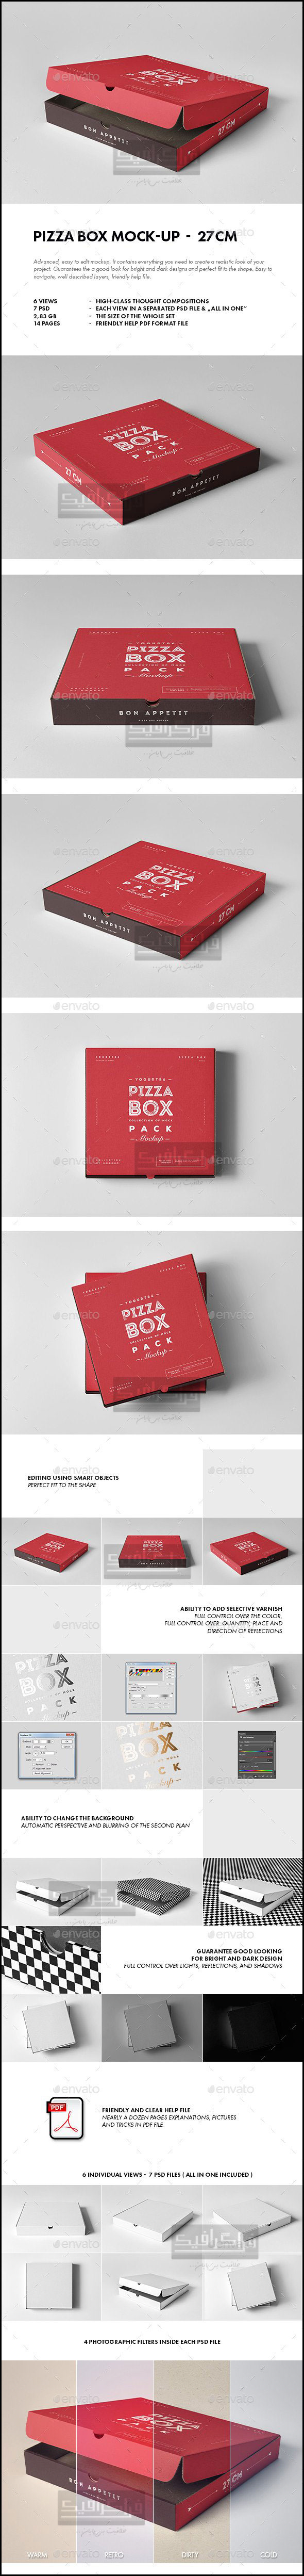 دانلود مجموعه ماک آپ فتوشاپ جعبه پیتزا